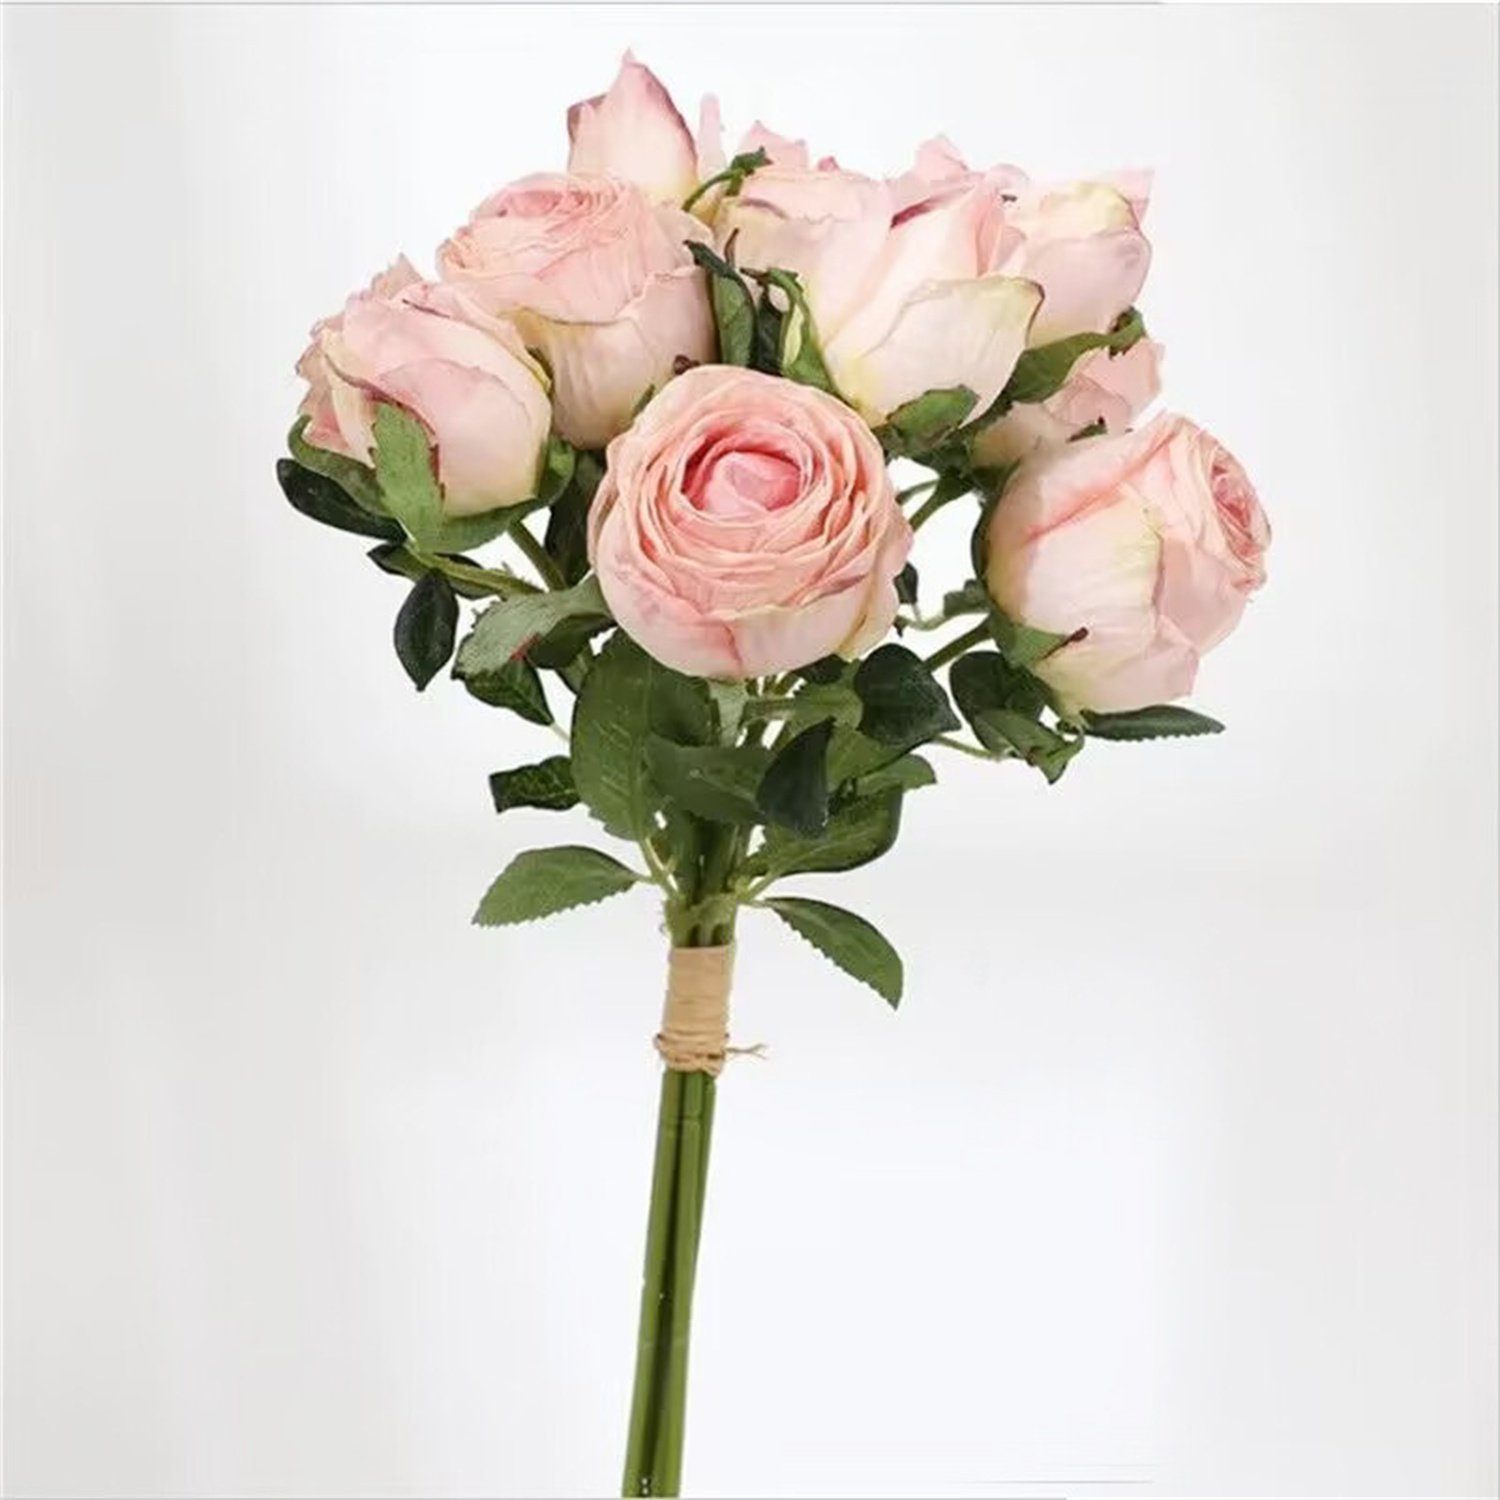 Trockenblume 6PCS Vintage verbrannt rosa Rand Simulation Trockenblumen, Bouquet, Rose autolock